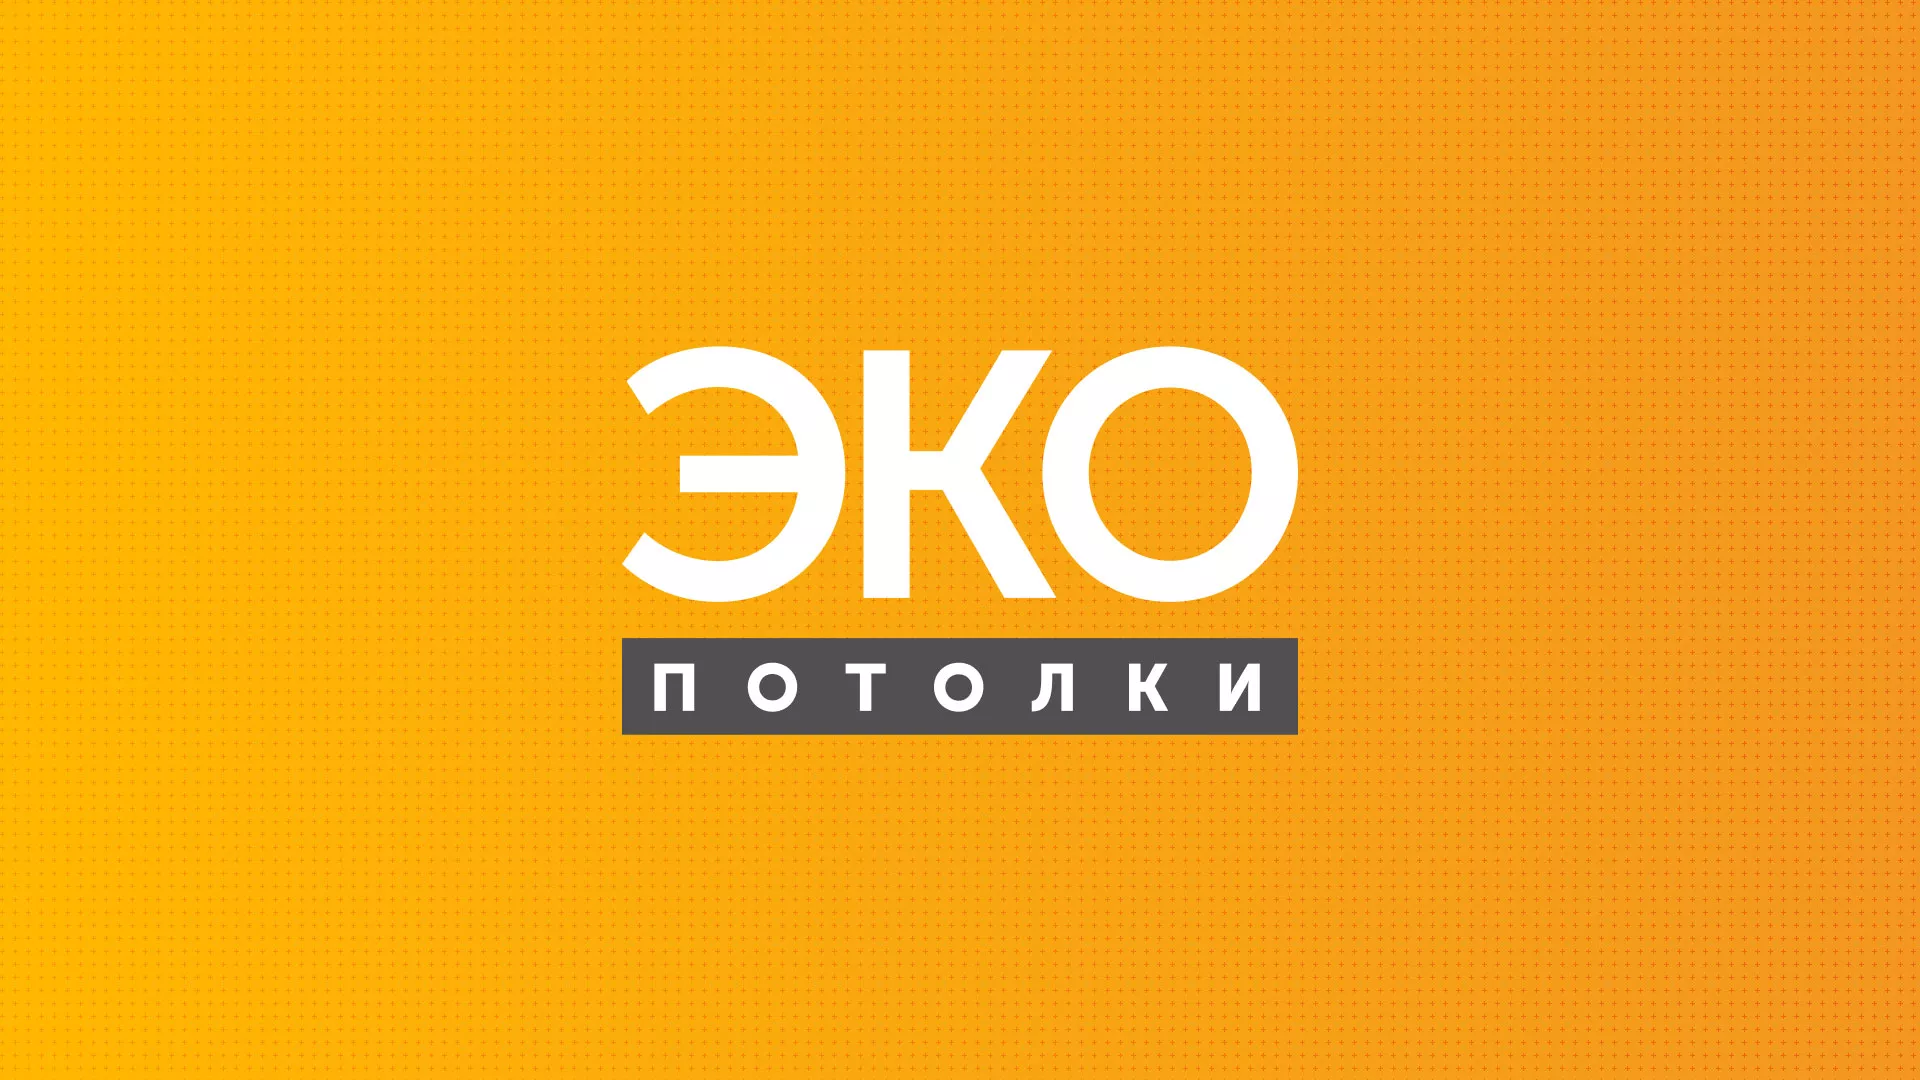 Разработка сайта по натяжным потолкам «Эко Потолки» в Черногорске